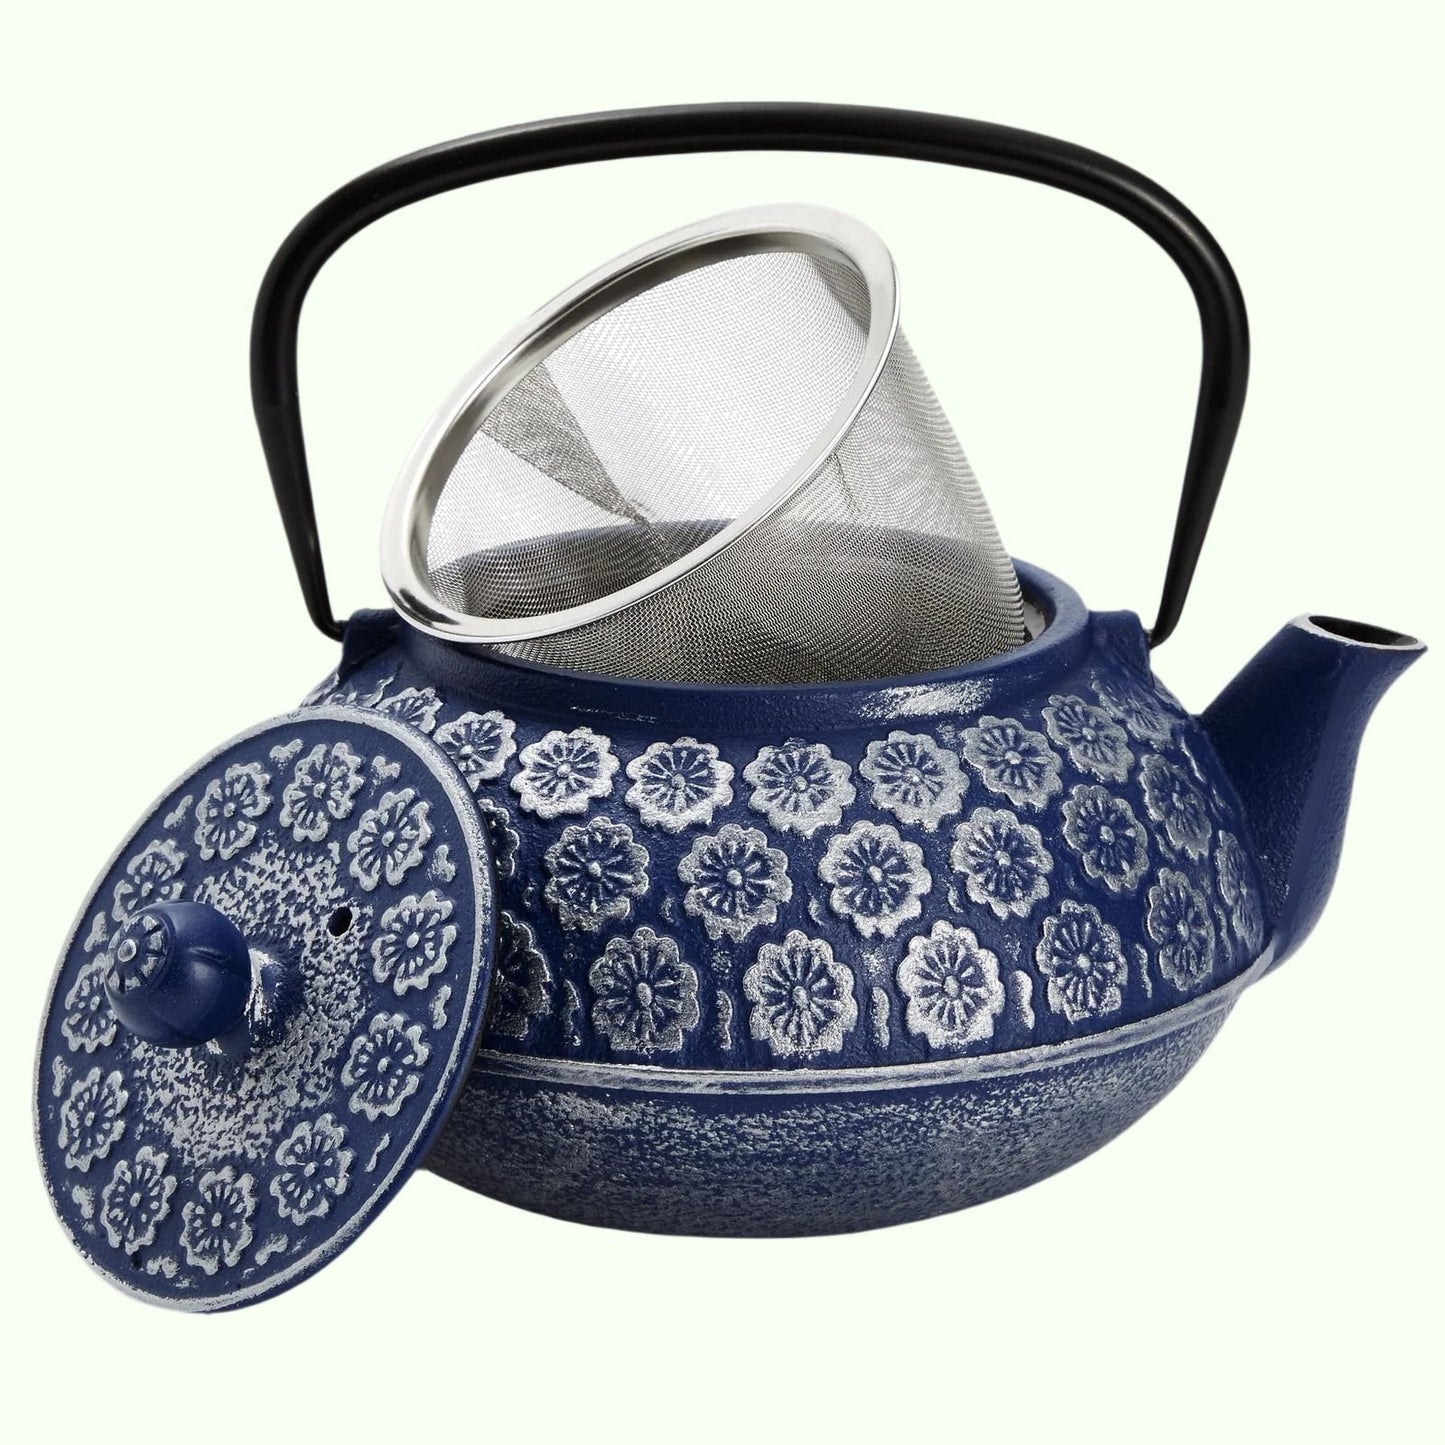 Modrá litina Čínská konvice s infuzí pro volný listový čaj, zahrnuje rukojeť a odnímatelné víko, 34oz